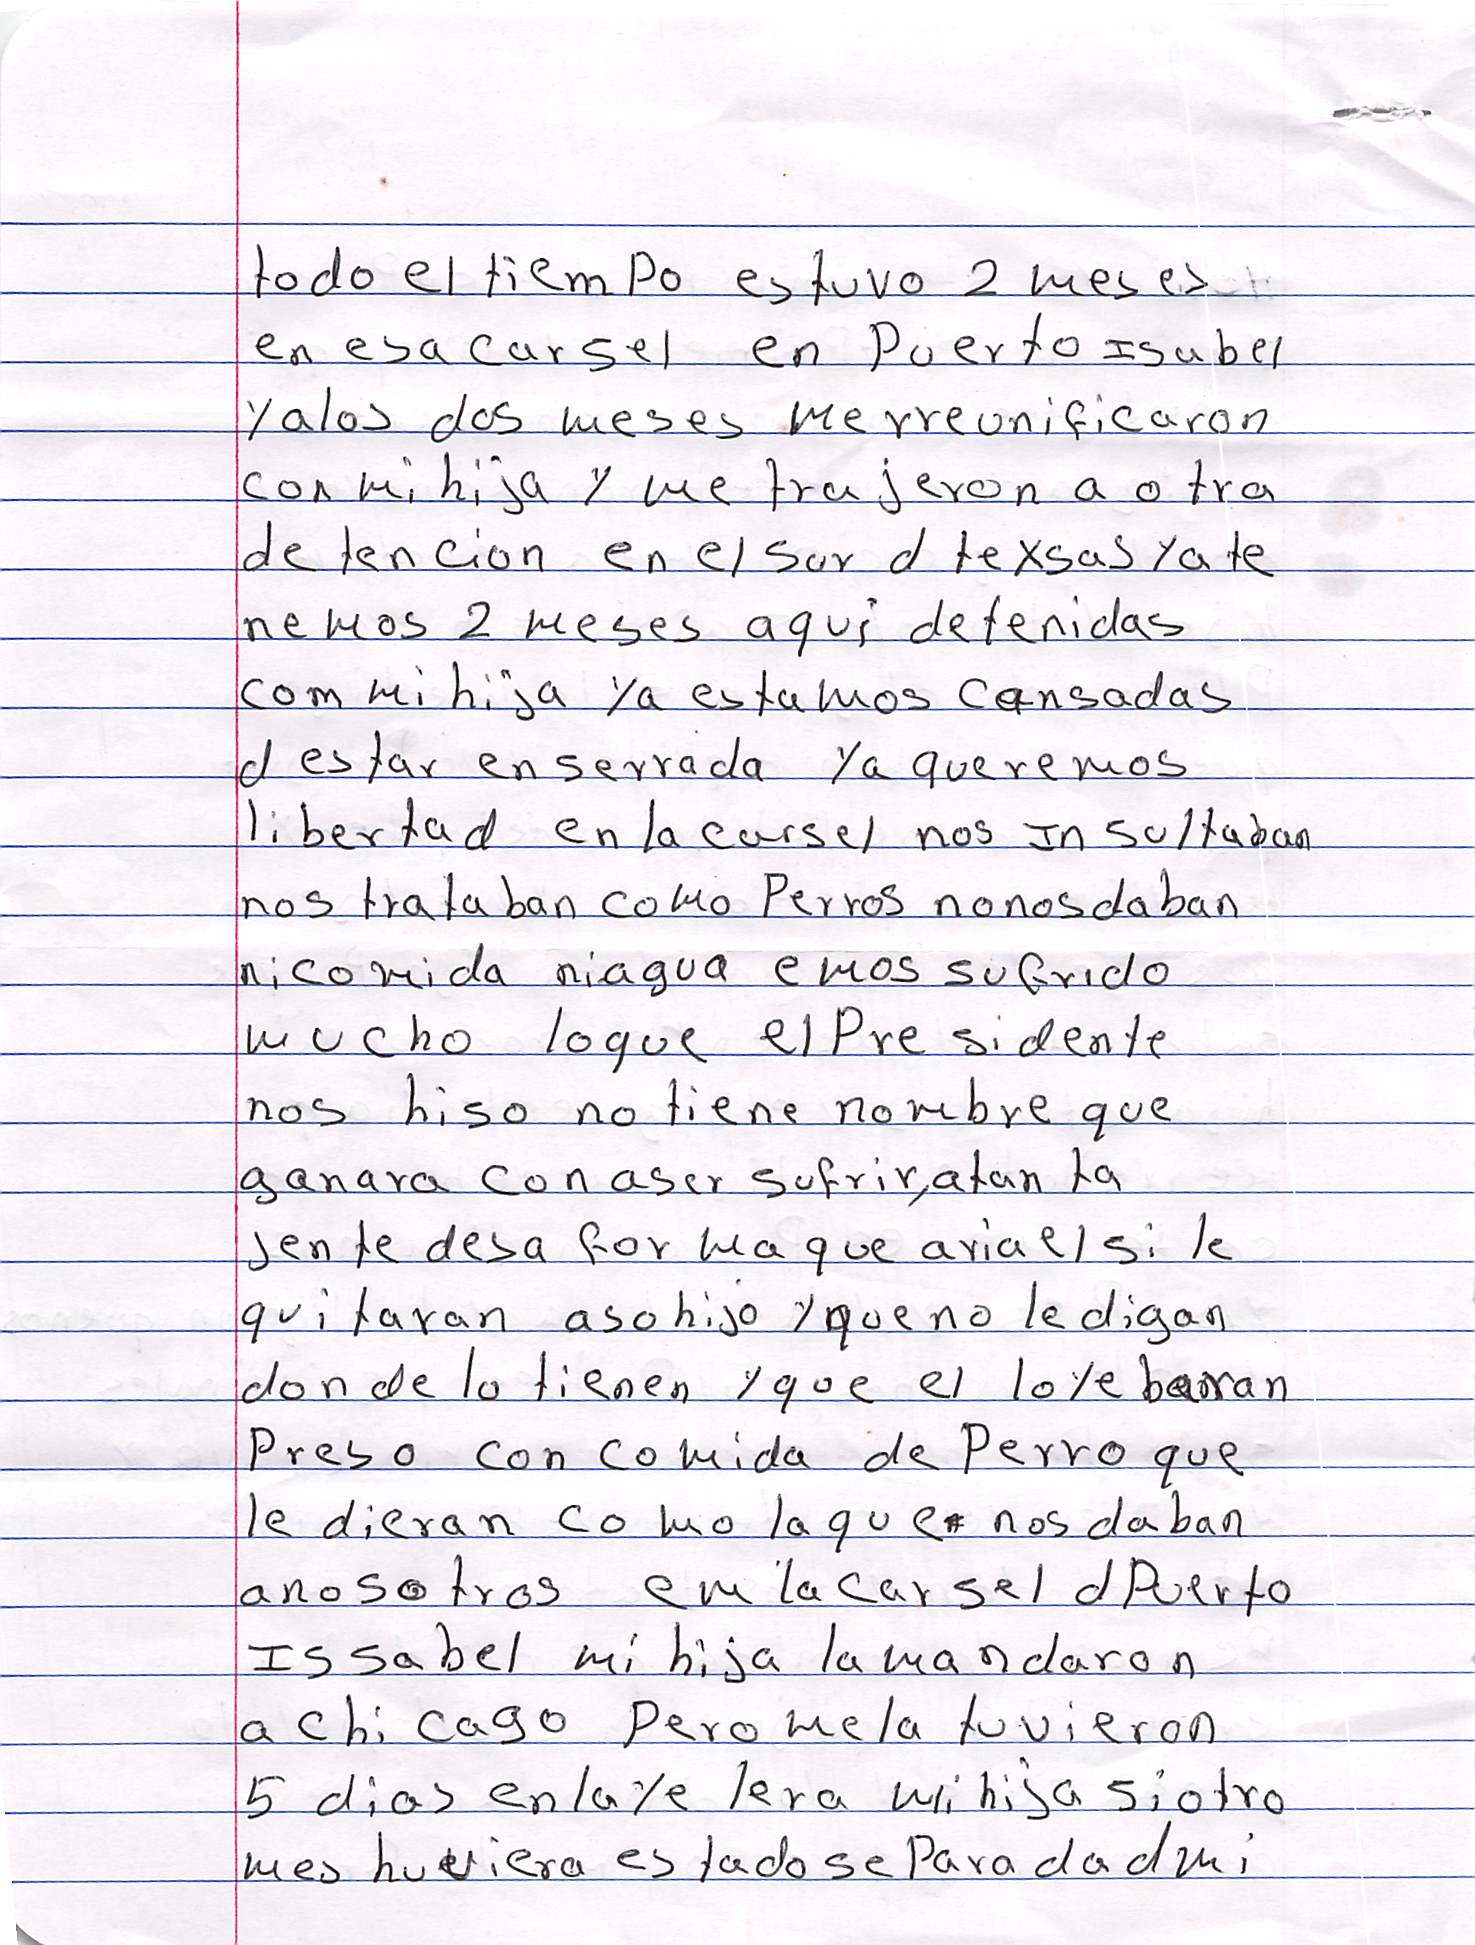 Camila's Handwritten Letter